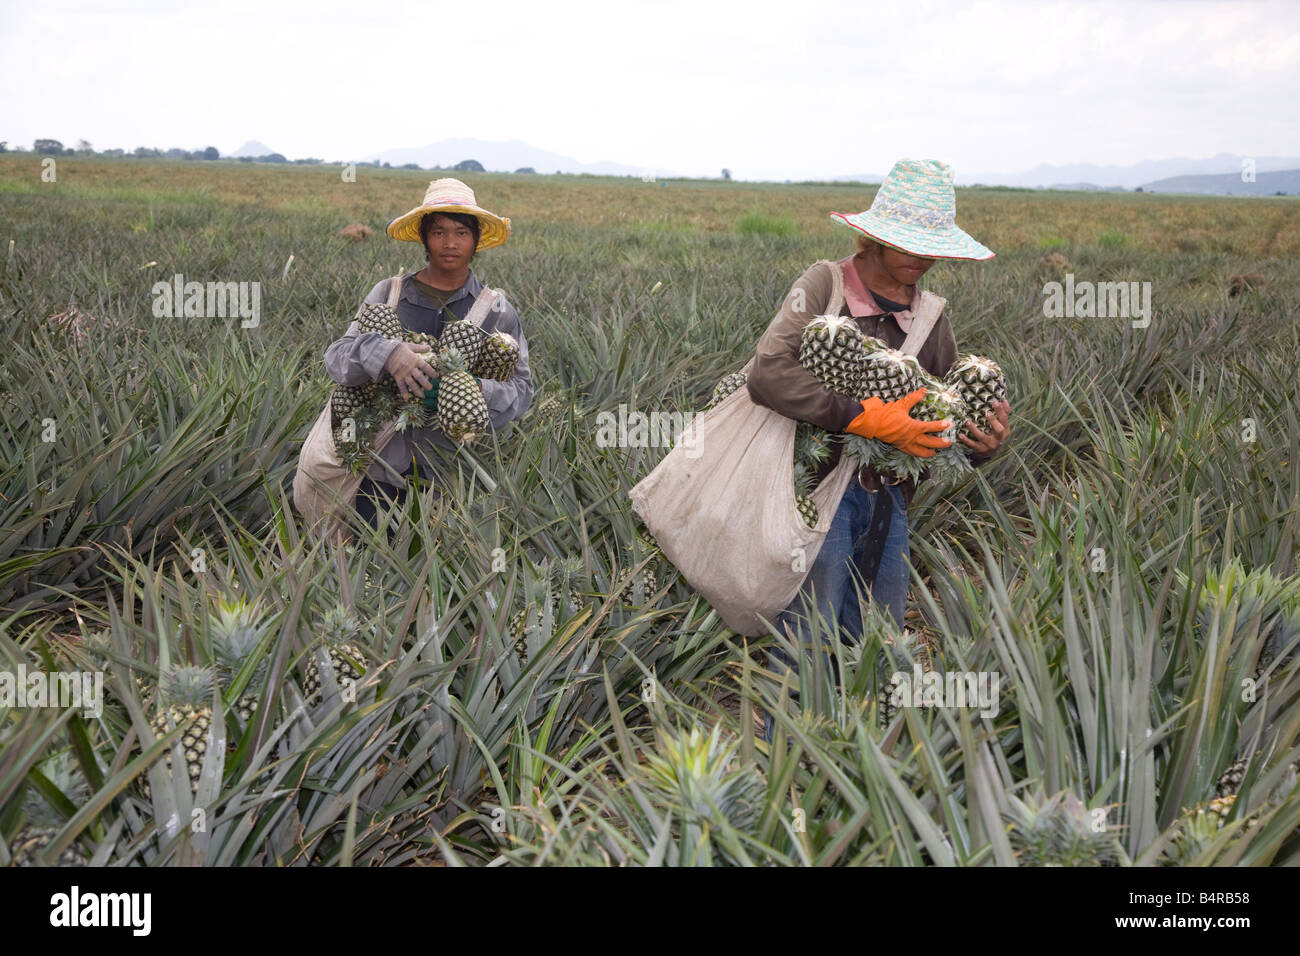 Travailleurs asiatiques; ananas cultivés par de petits producteurs qui vendent leur récolte à une usine de transformation. Ouvriers cueillant des ananas Petchaburi Thaïlande Banque D'Images